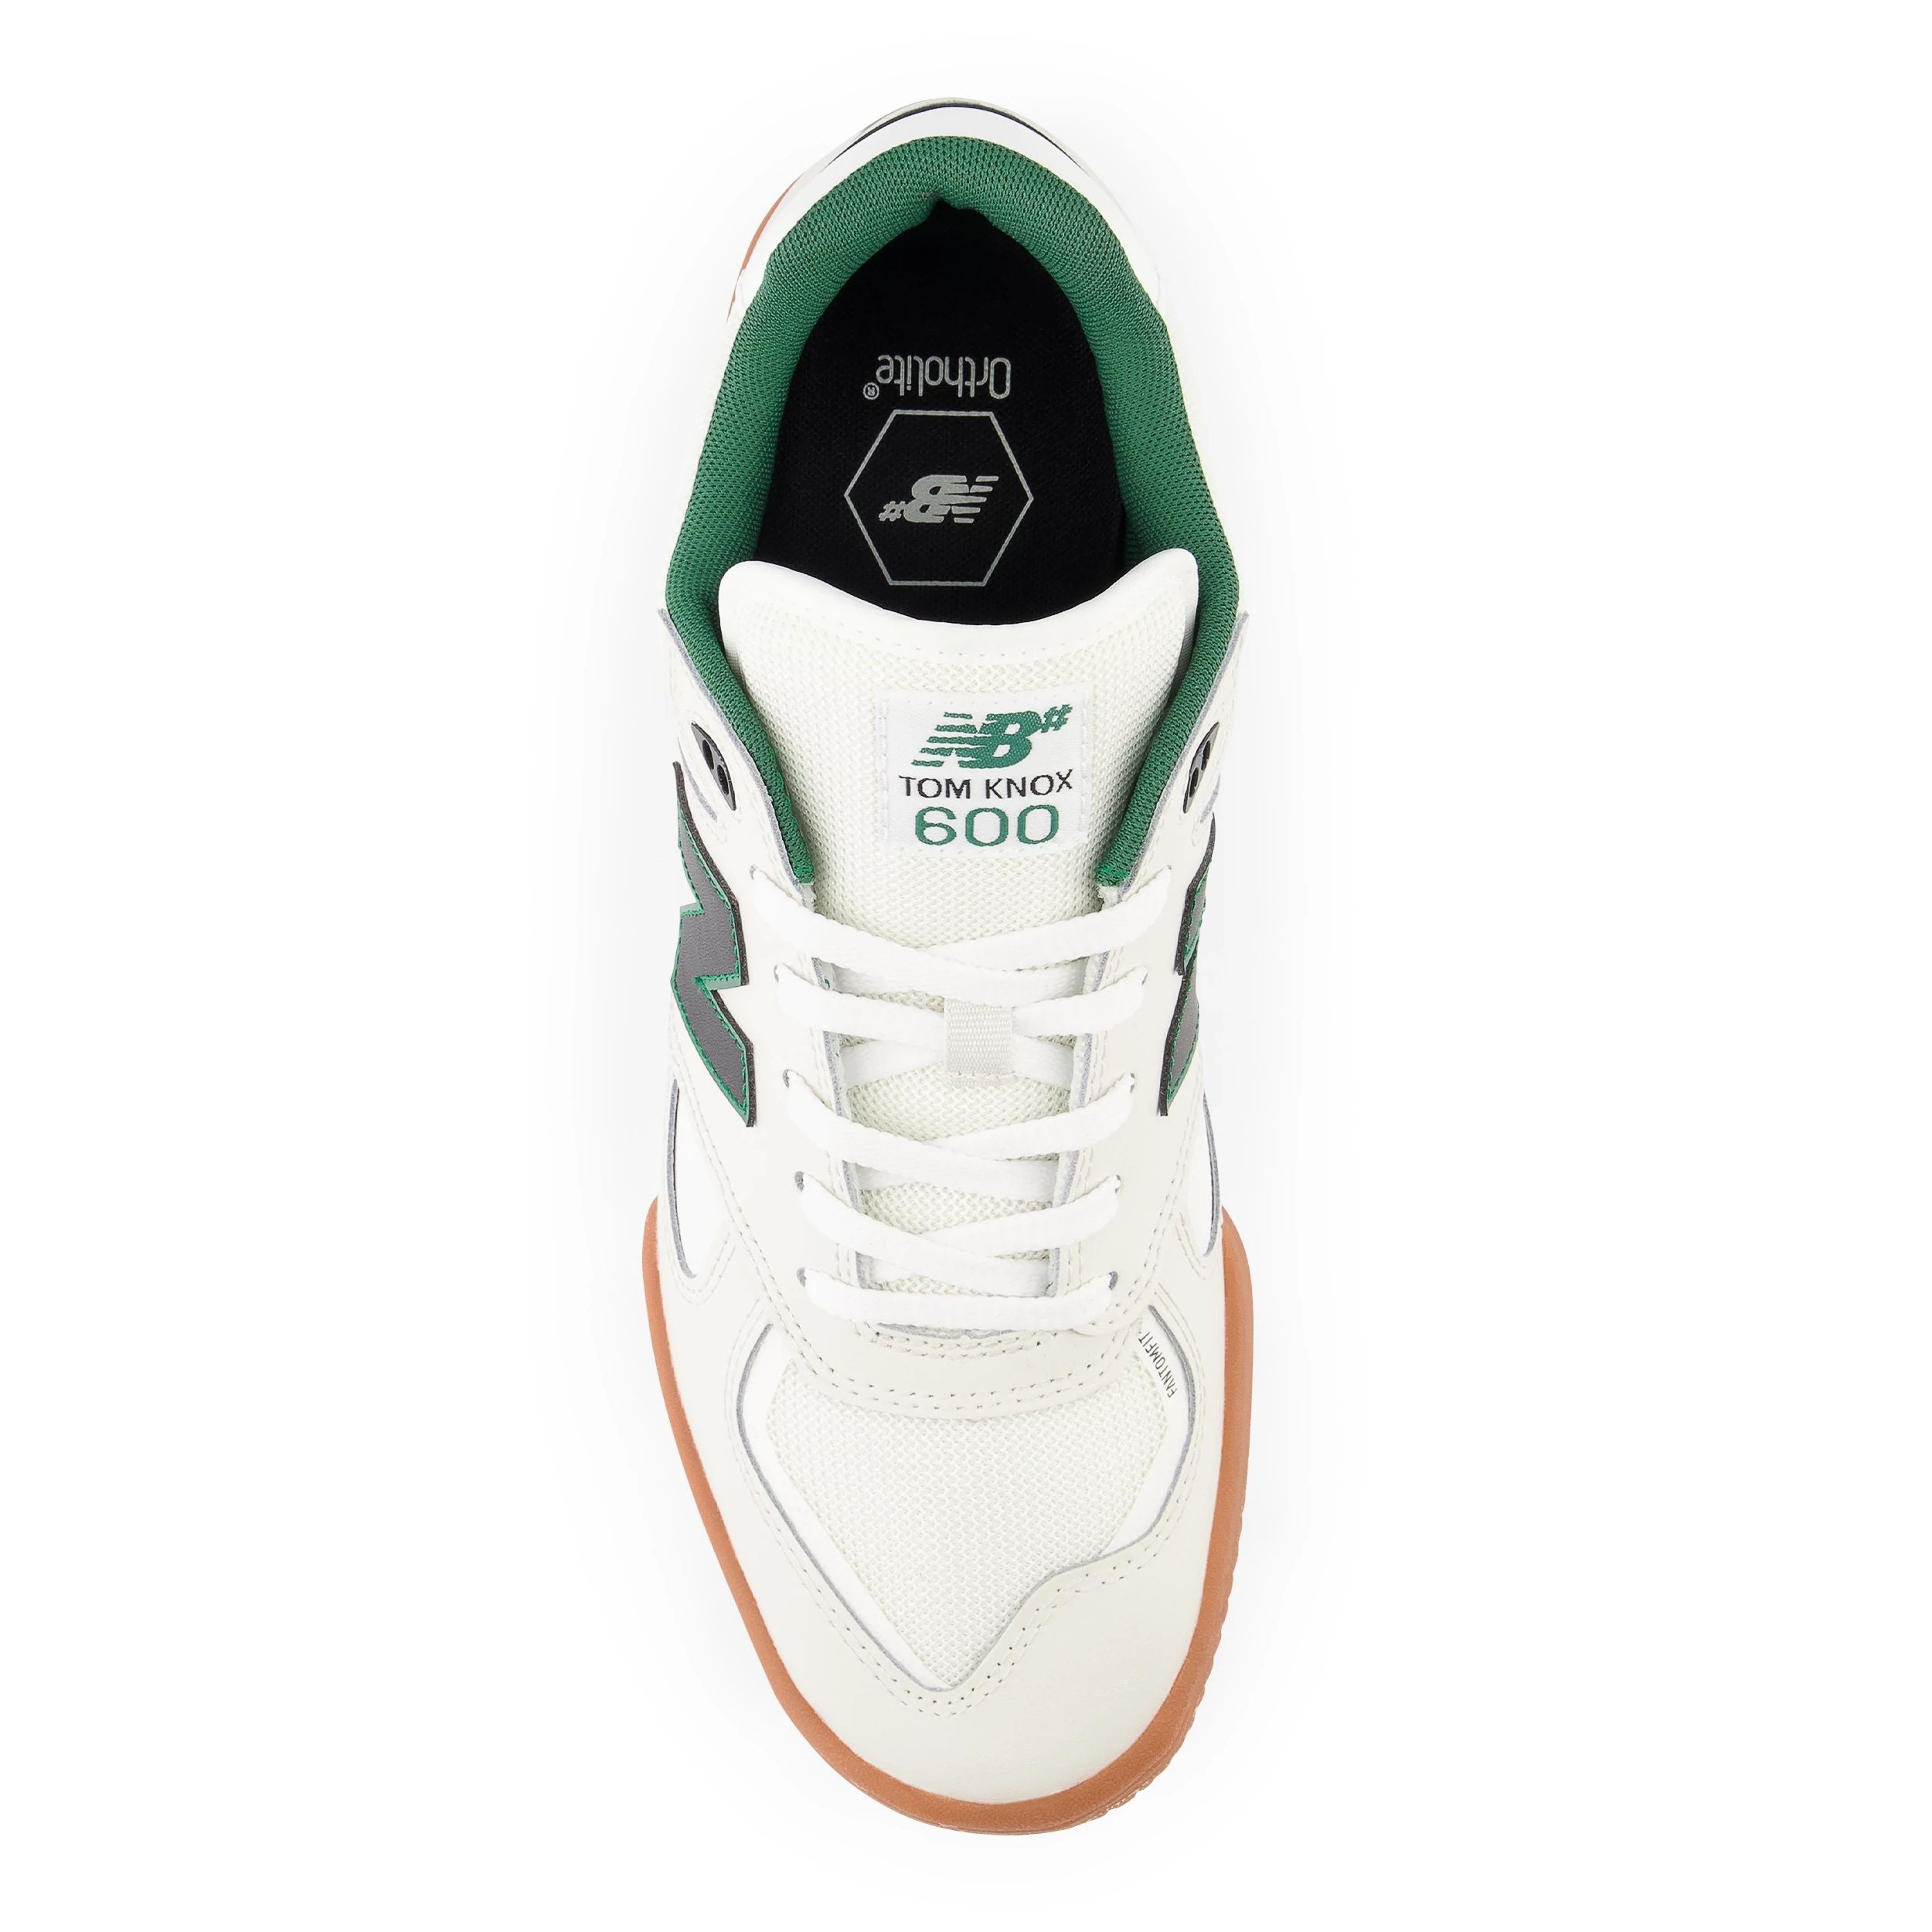 White/Gum Tom Knox NM600 NB Numeric Skate Shoe Top